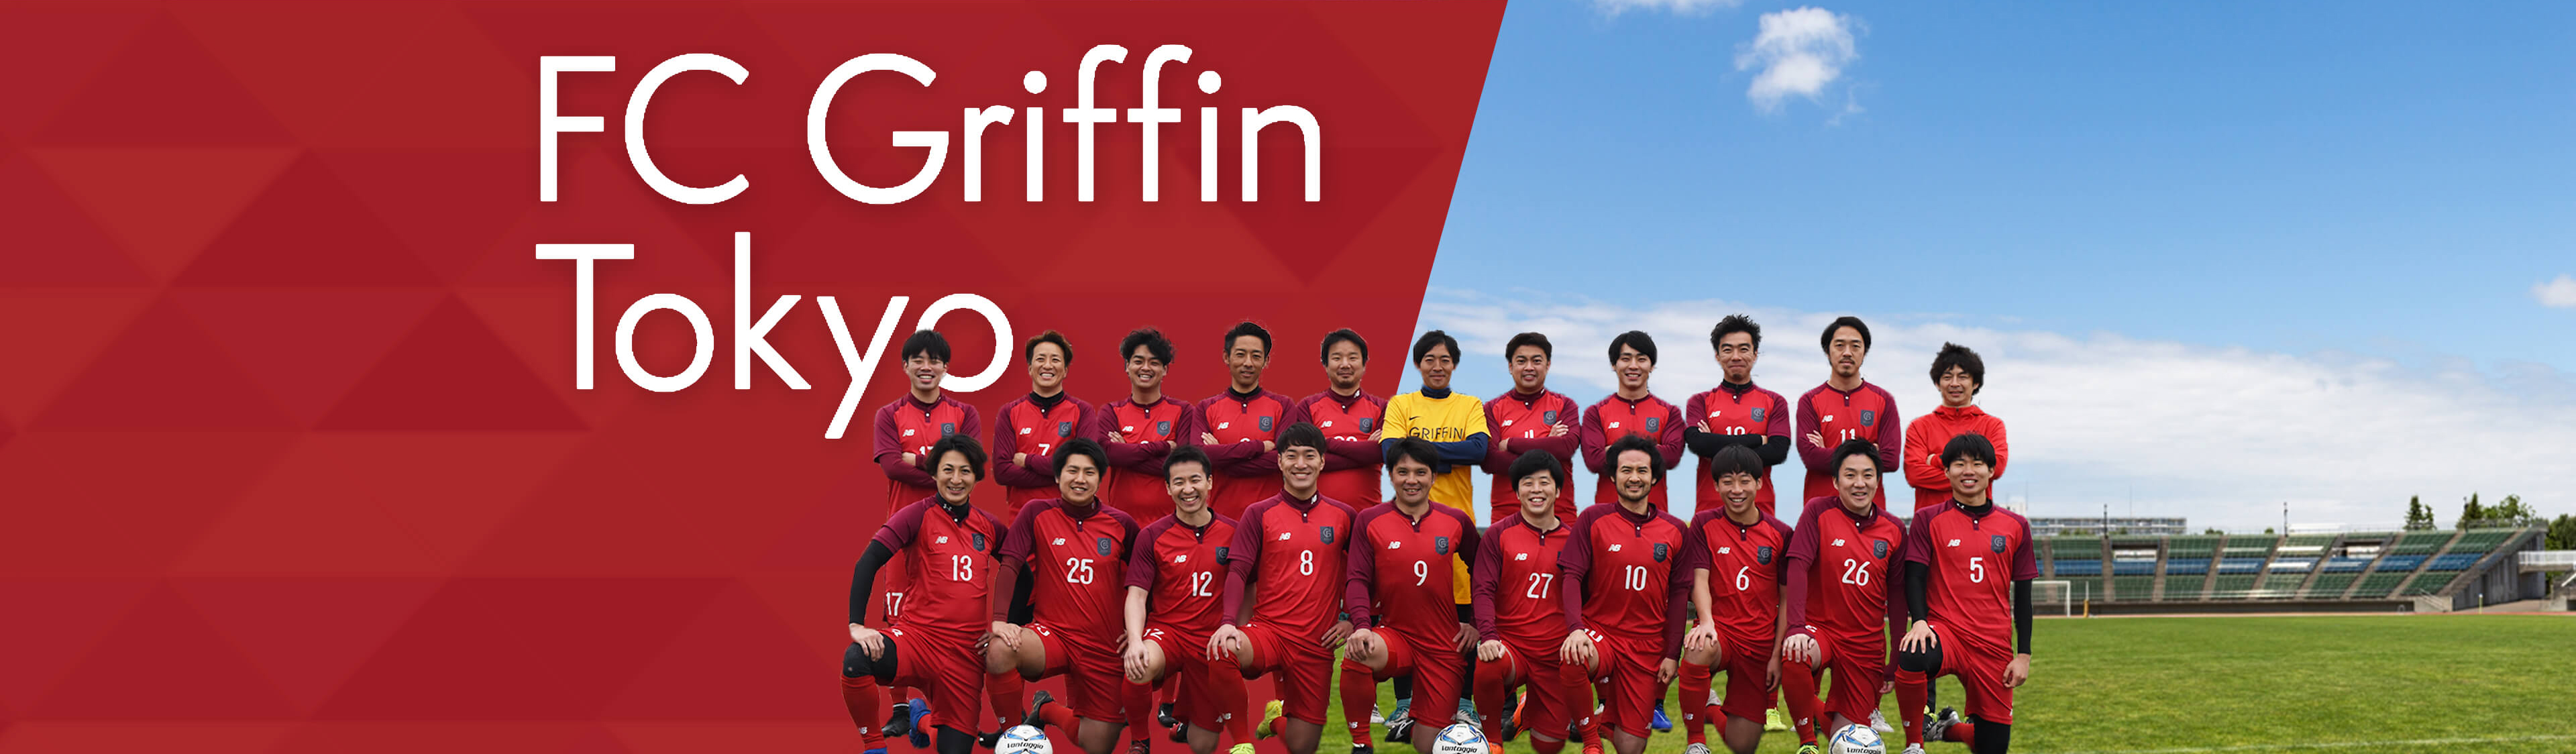 FC Griffin Tokyo